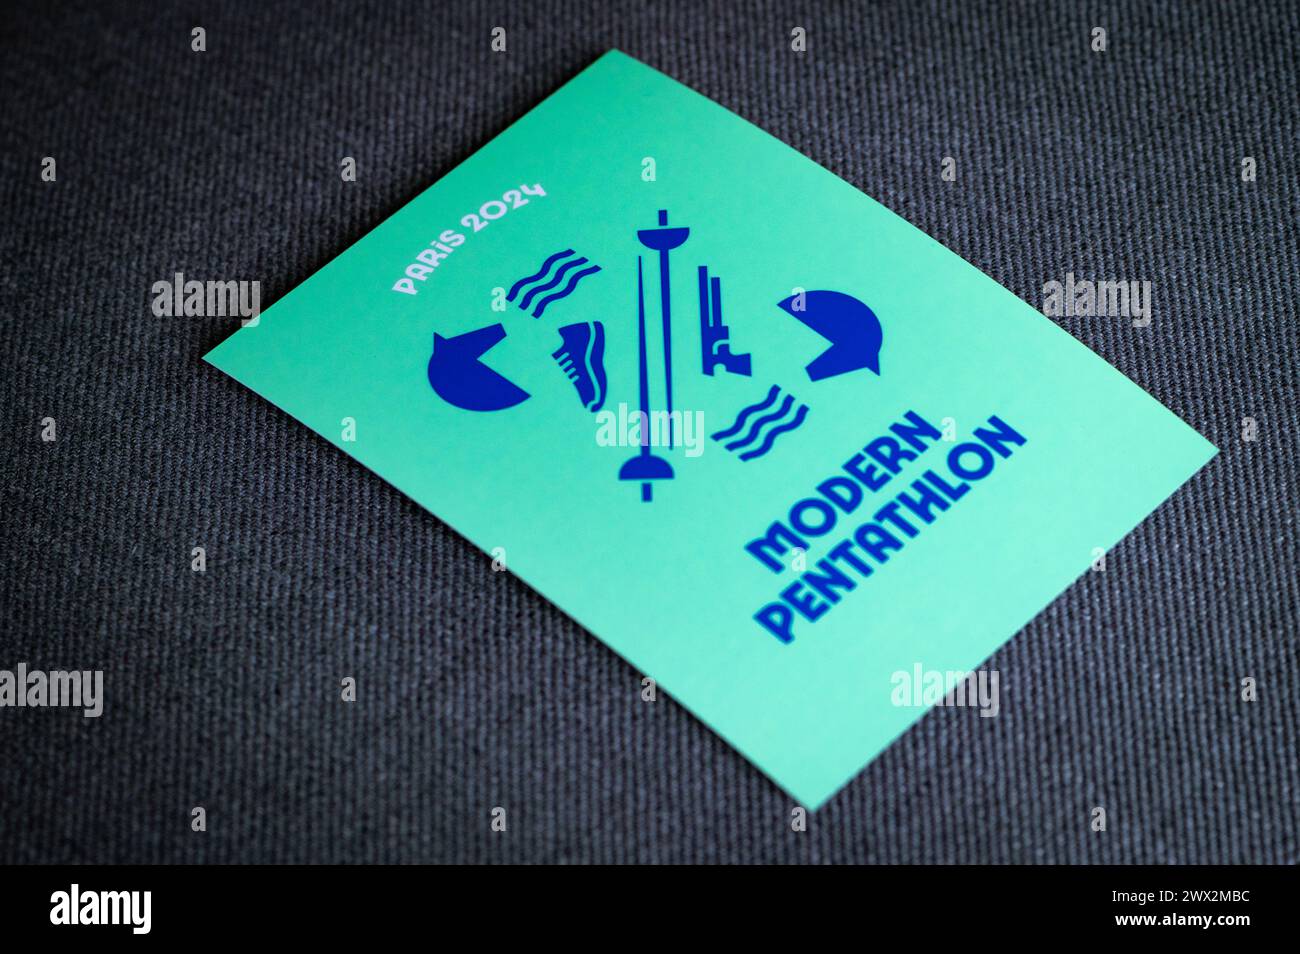 Modernes Fünfkampf-Piktogramm für die olympischen sommerspiele 2024 in paris. Offizielle Ikone des Sports beim olympischen Spiel in Paris 24 Stockfoto